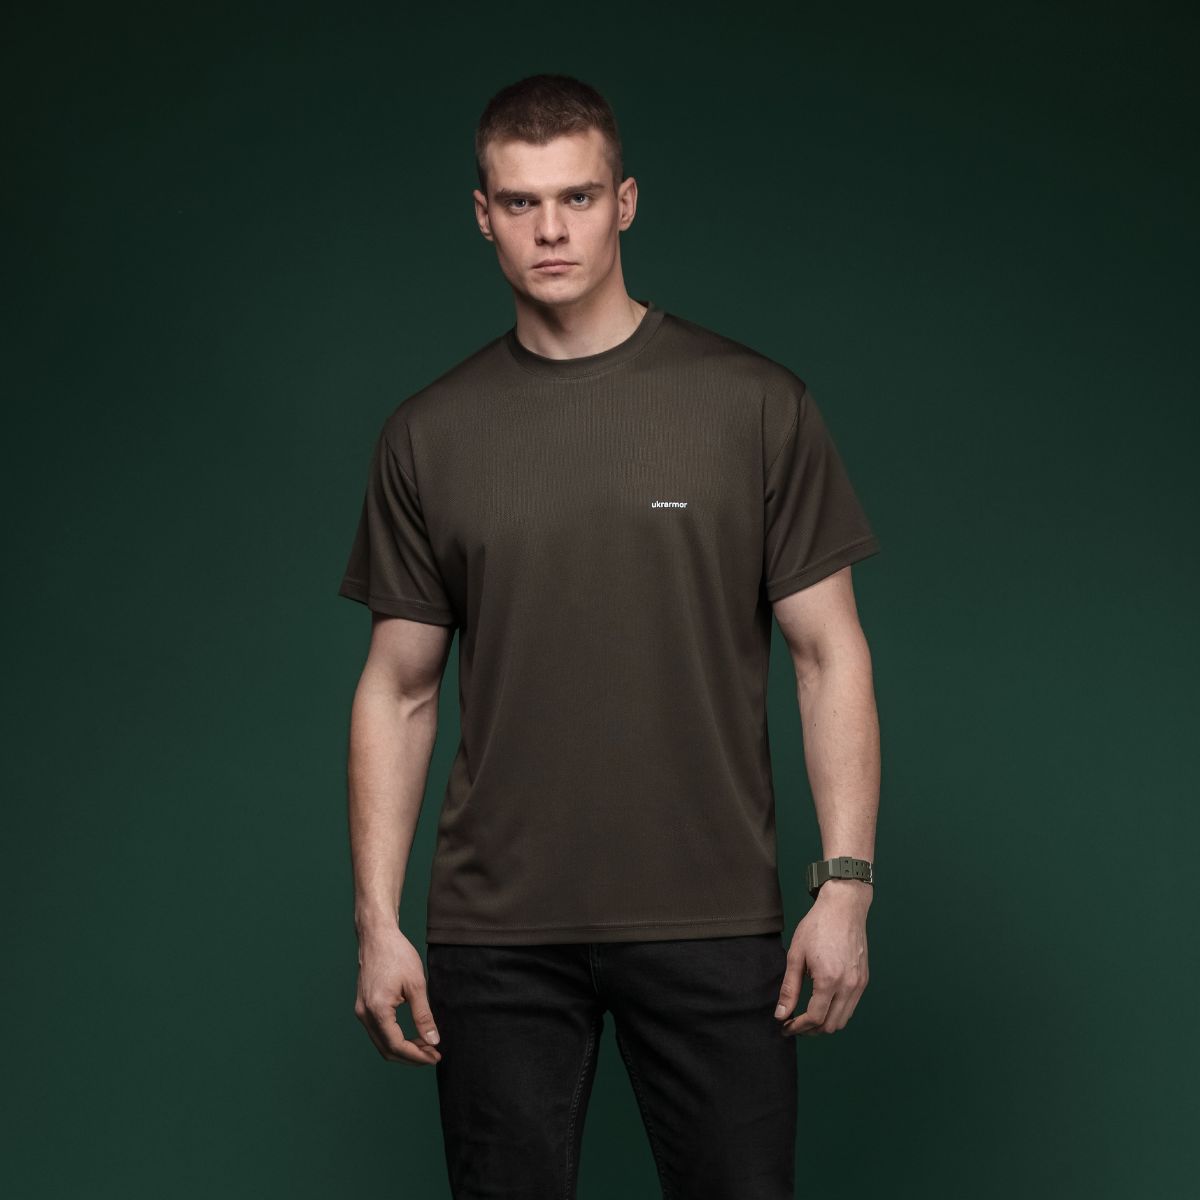 Комплект футболок (3 шт.) AIR Coolmax. Легкие и хорошо отводят влагу. Ranger green. Размер M 2